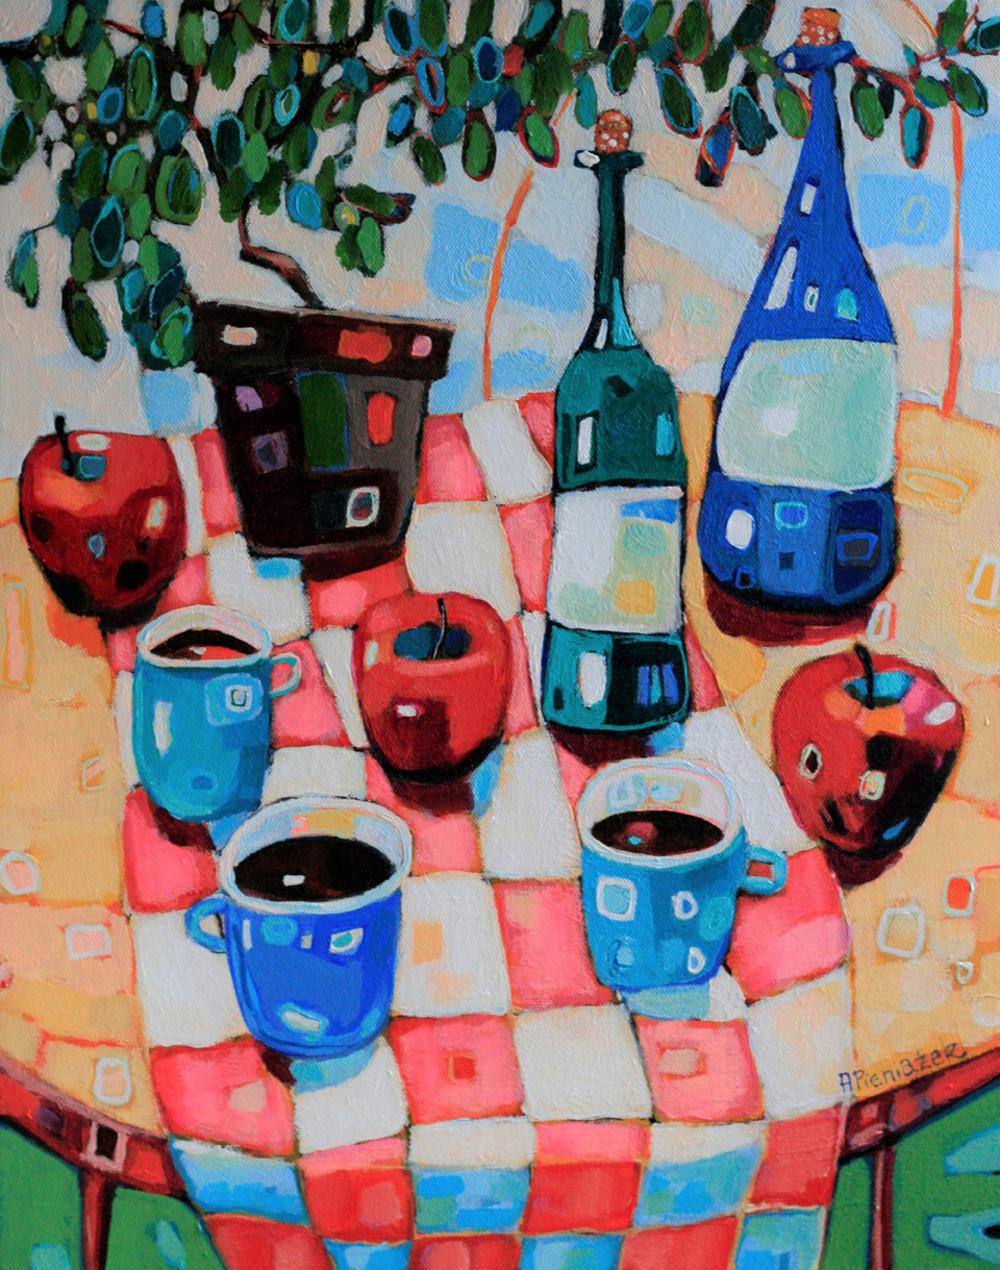 Stillleben mit Apfeln und Kaffee – farbenfrohe Interieurszene aus Acryl auf Leinwand